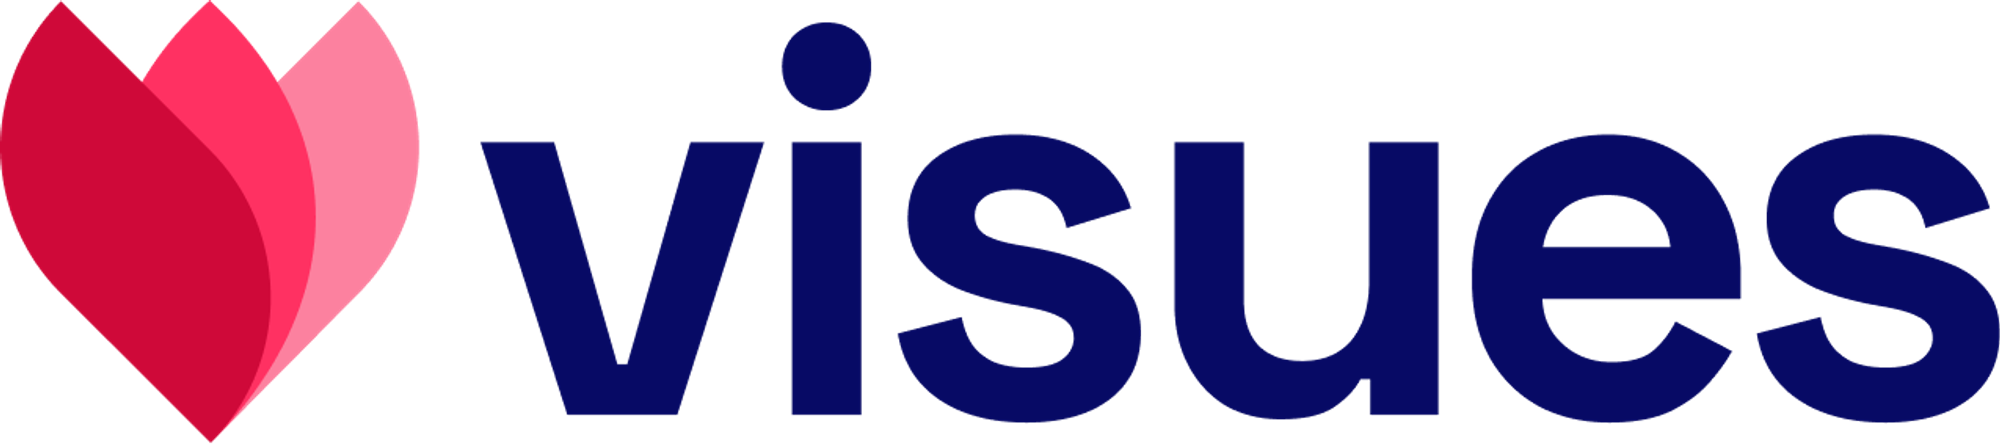 Modern logo design for visues.com